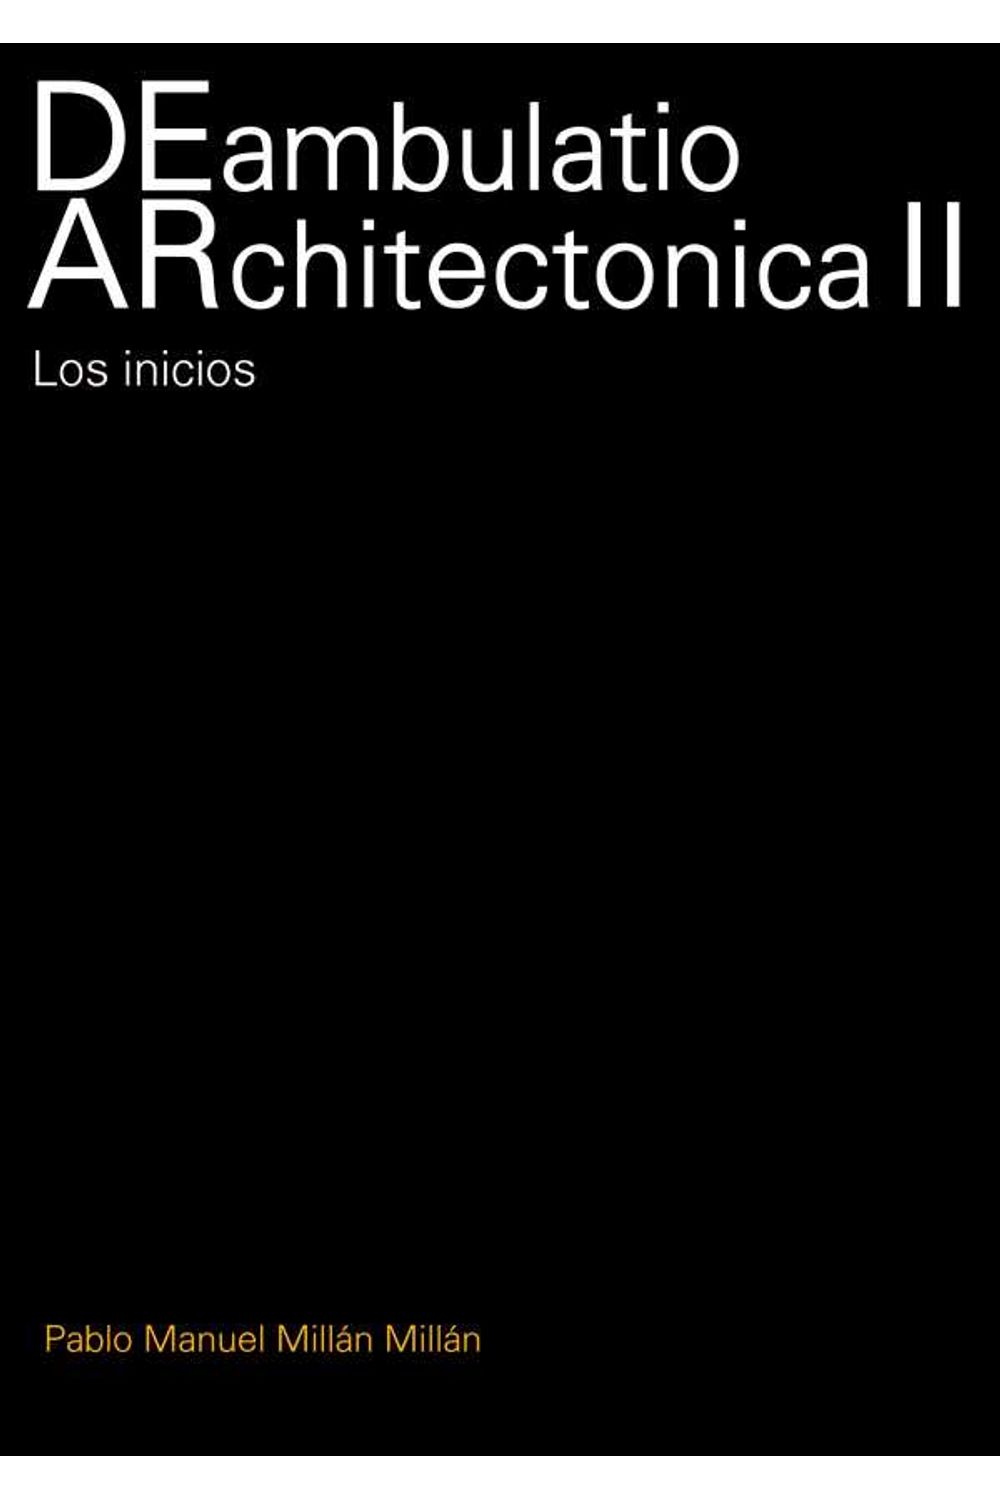 DEambulatio Architectonica II. 9781643605838